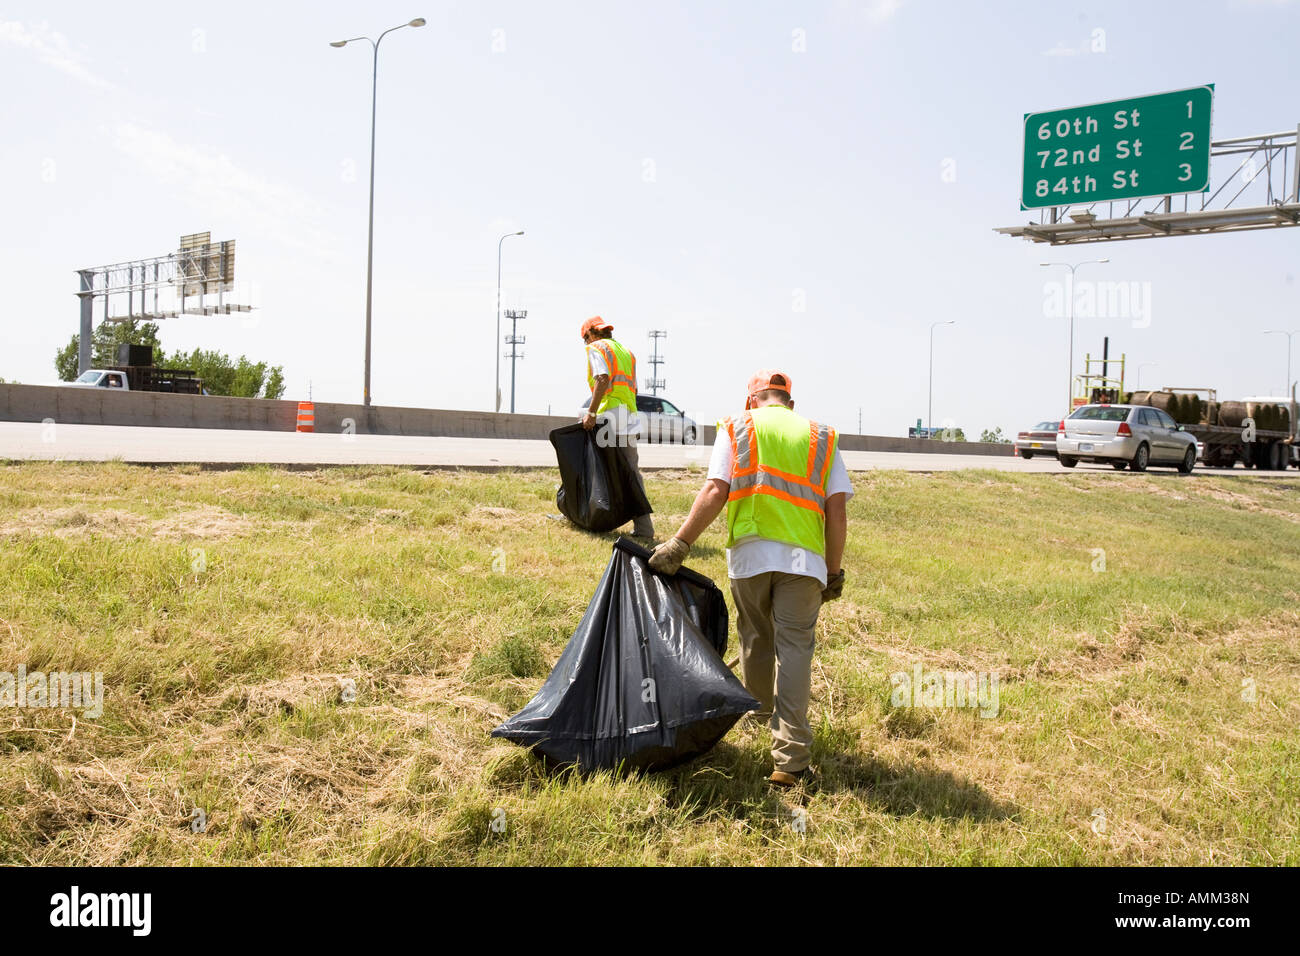 Travailler en collaboration avec les détenus en liberté picking up trash sur le côté de la route. Omaha, Nebraska. Banque D'Images